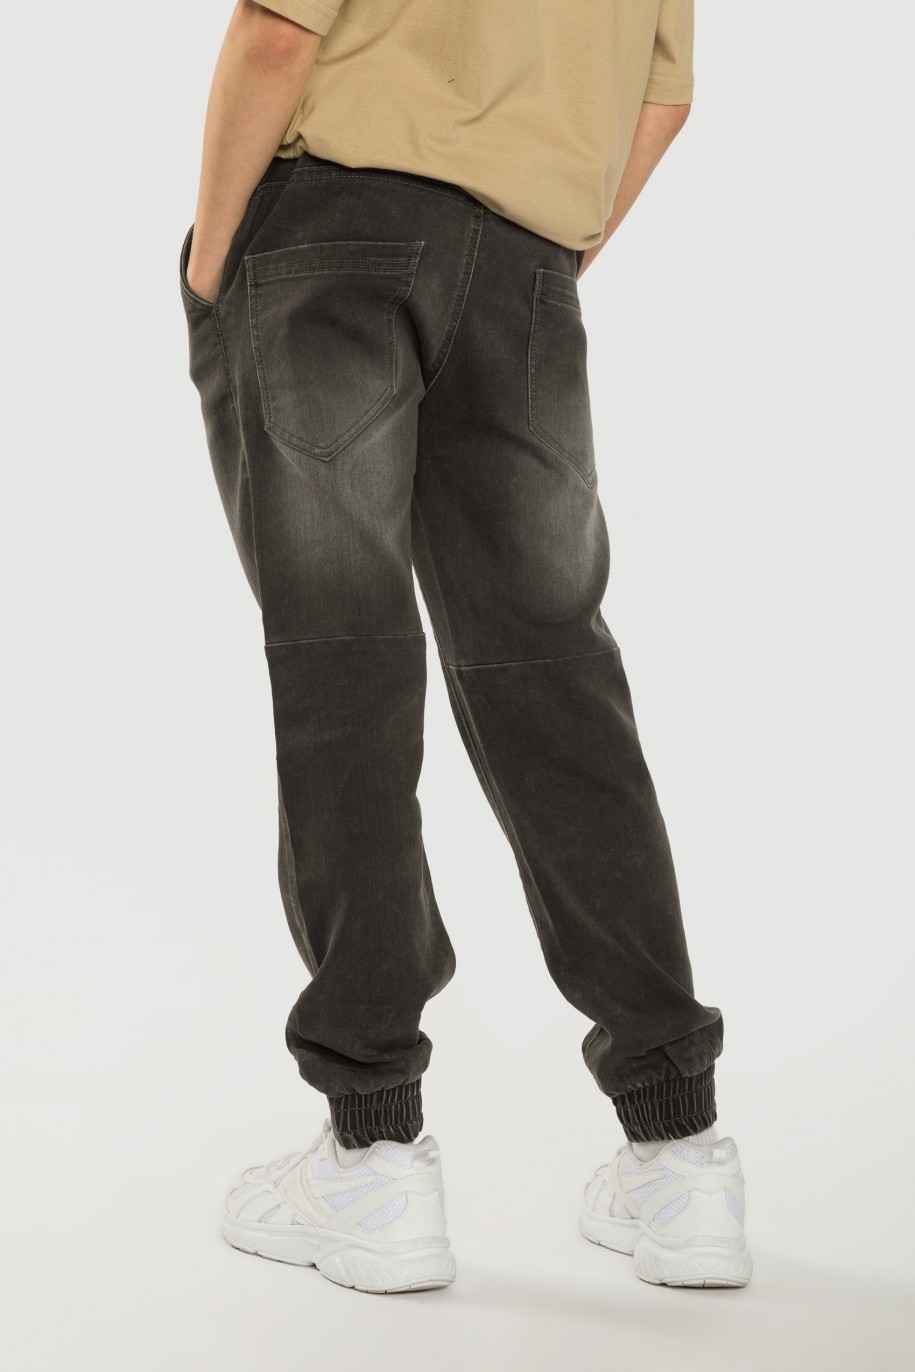 Szare jeansy typu JOGGER o luźnym kroju - 40849